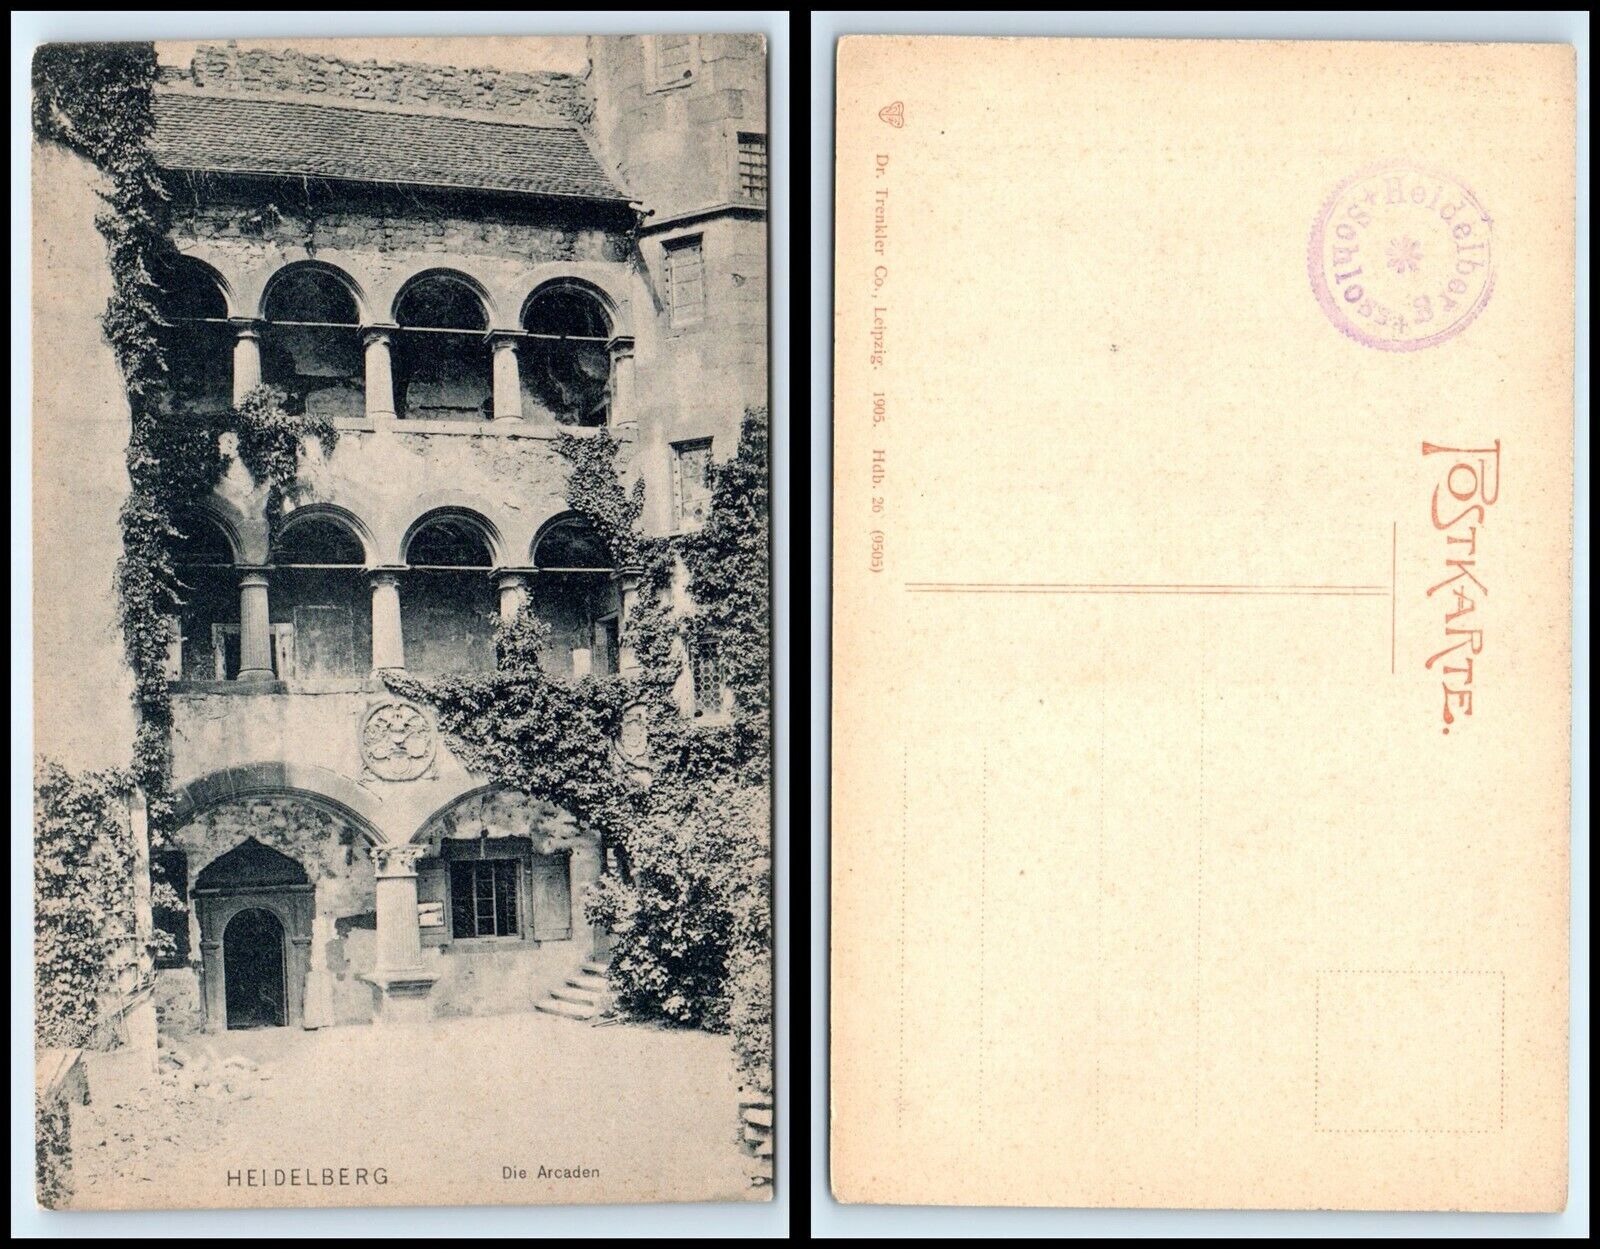 GERMANY Postcard - Heidelberg, Die Arcaden N18